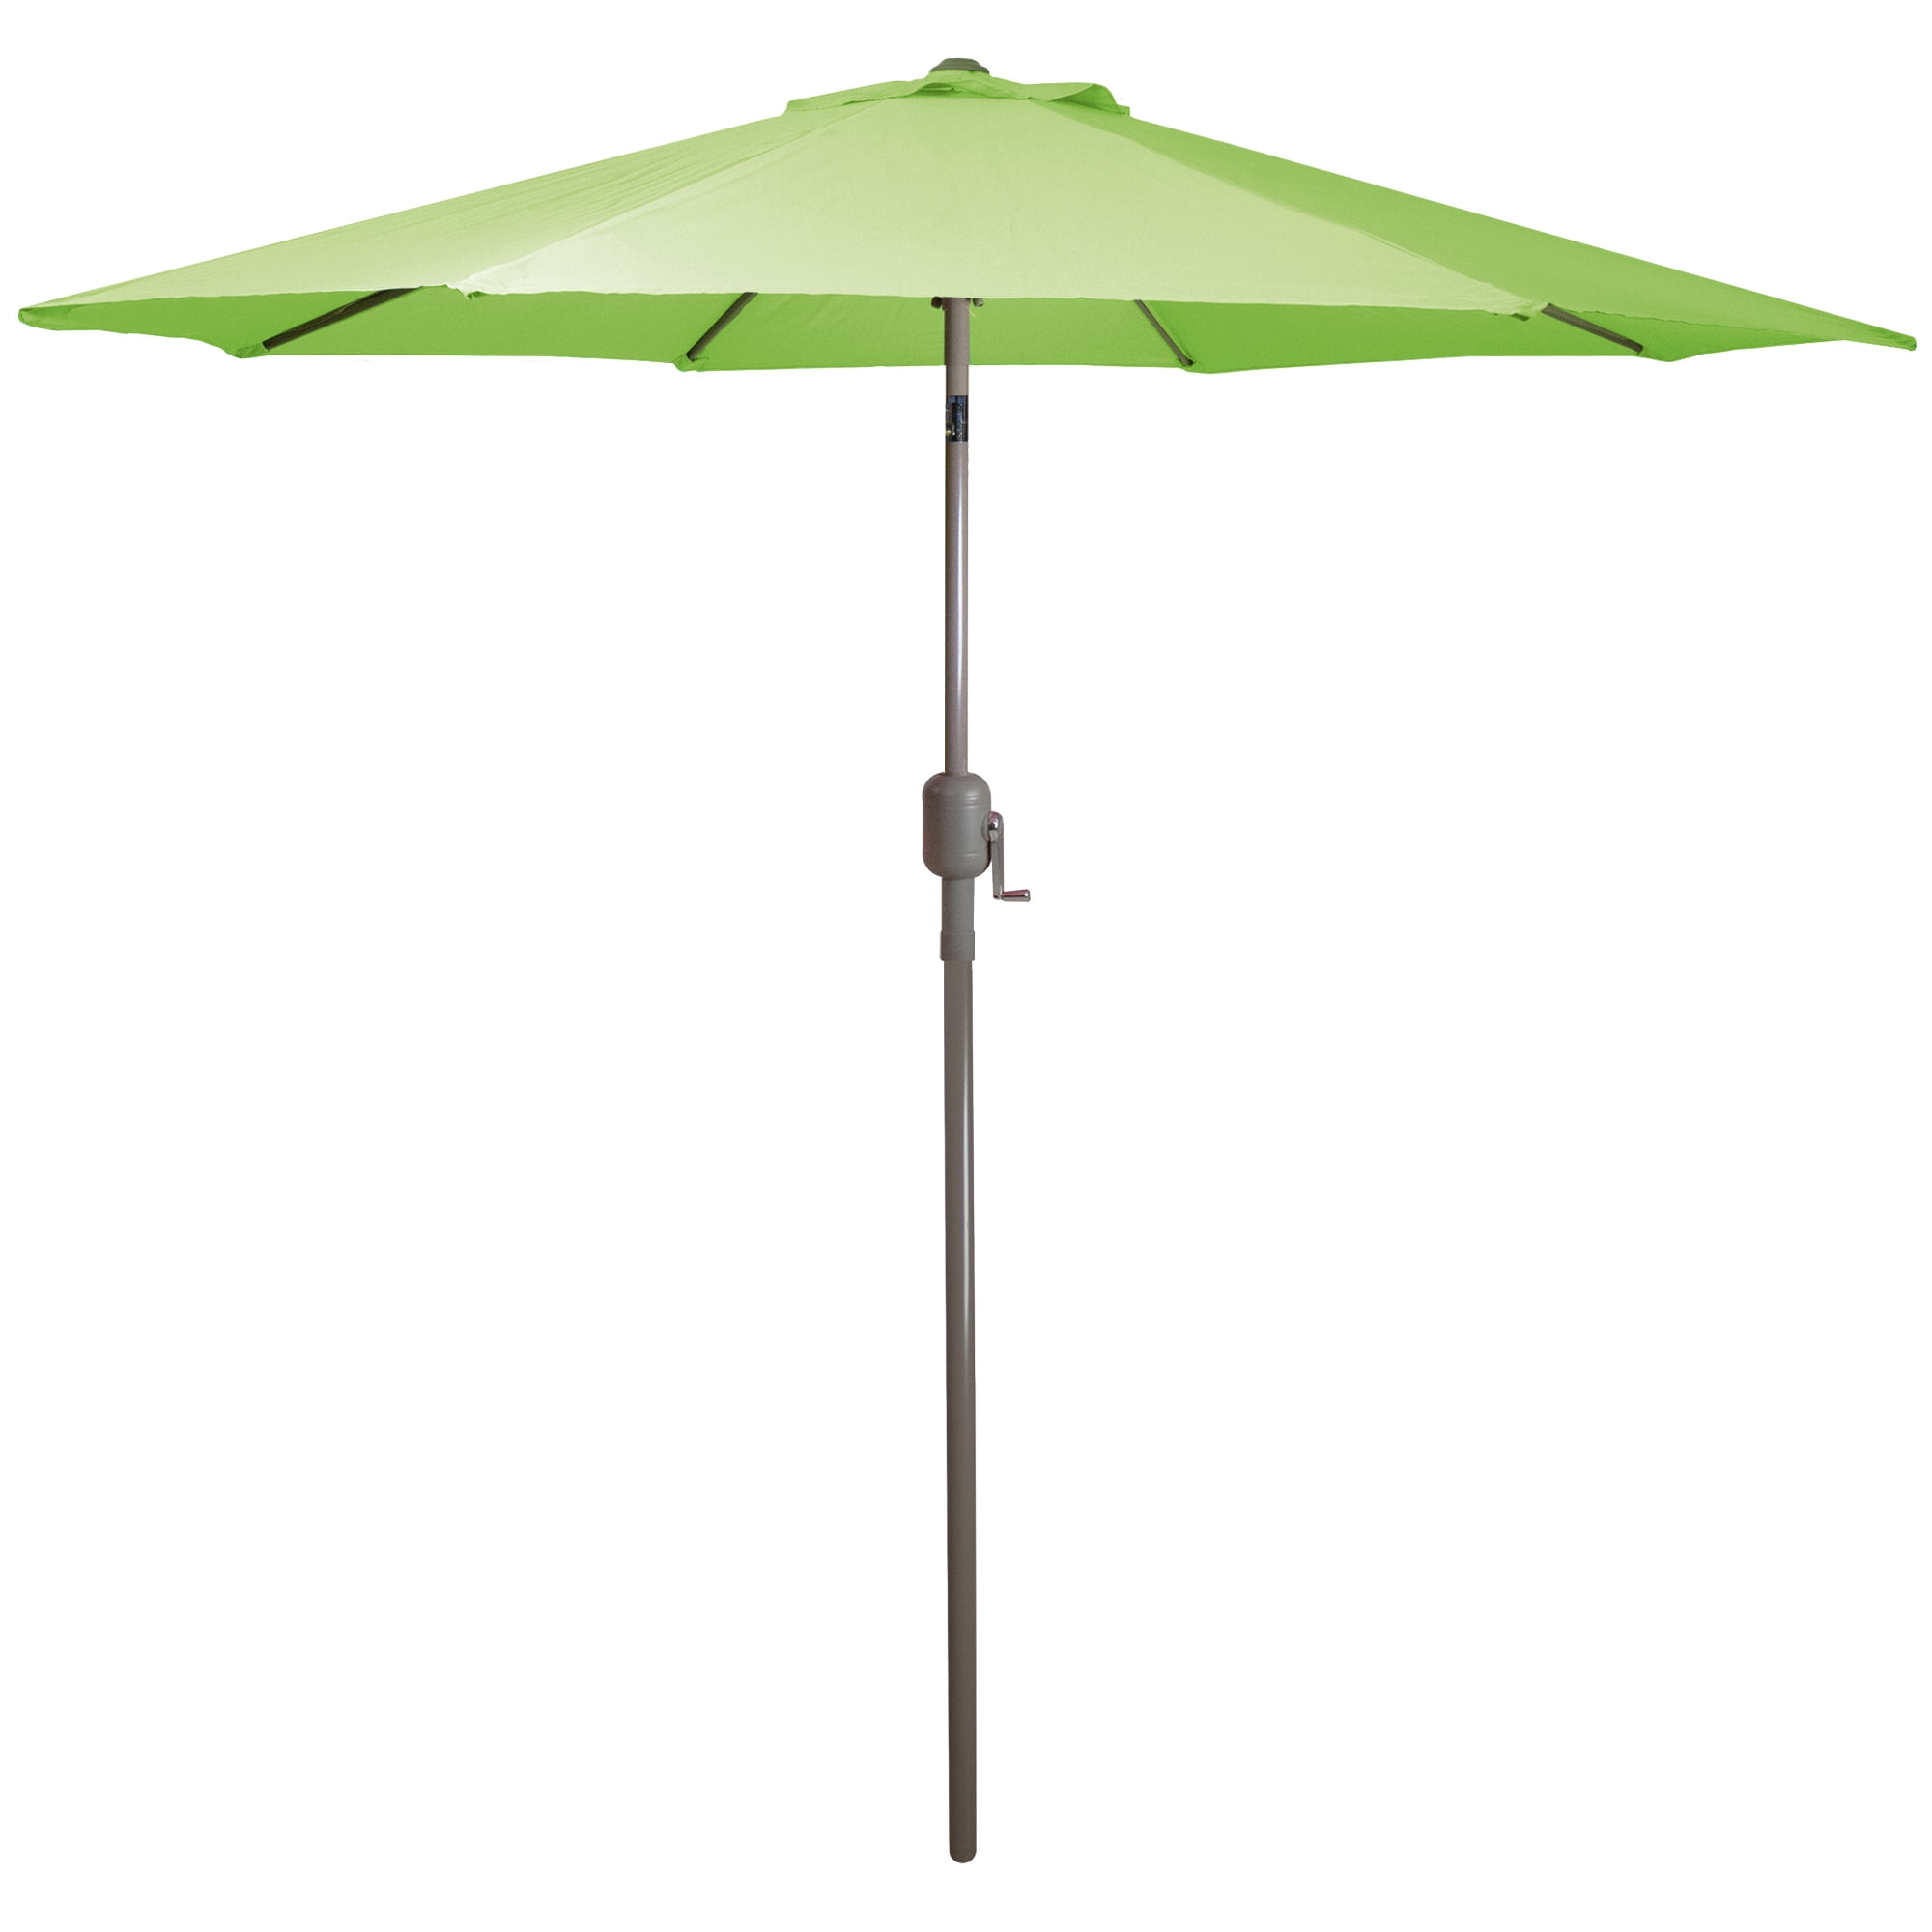 Onderdrukken Wordt erger heroïsch 9ft Outdoor Patio Market Umbrella with Hand Crank and Tilt, Lime Green -  Walmart.com